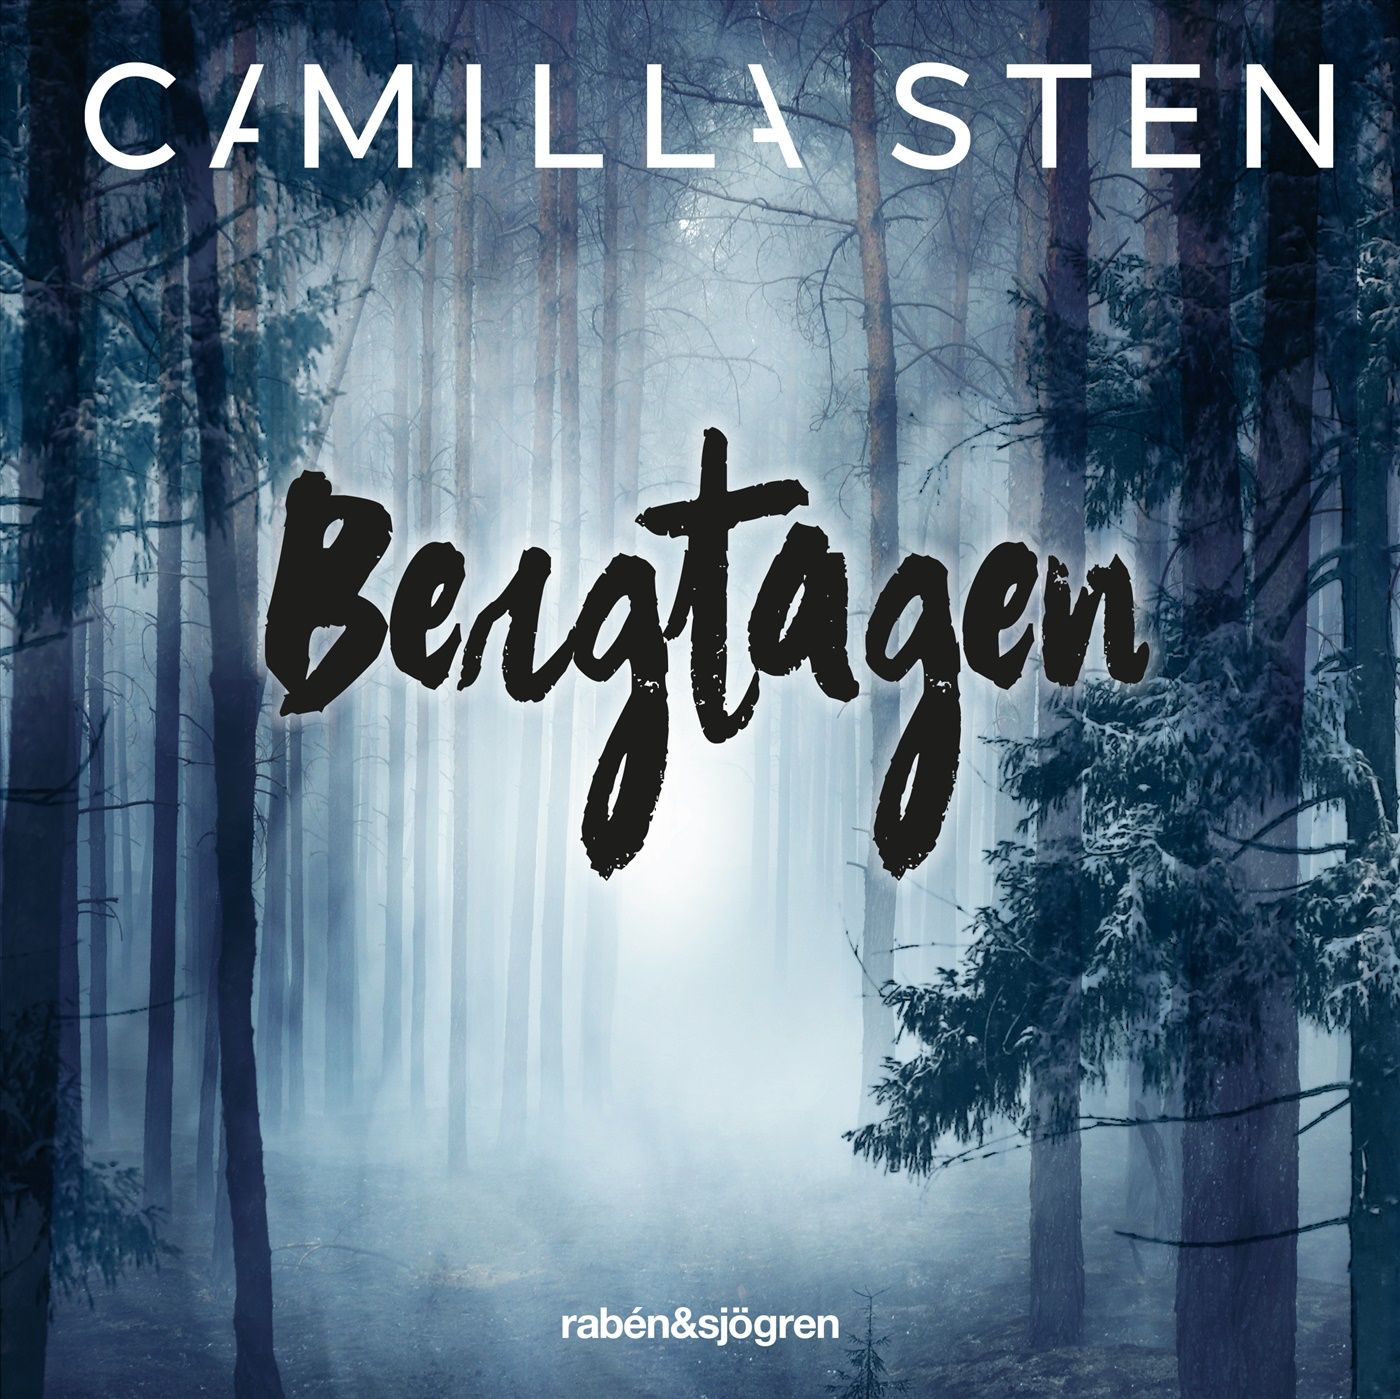 Bergtagen, ljudbok av Camilla Sten